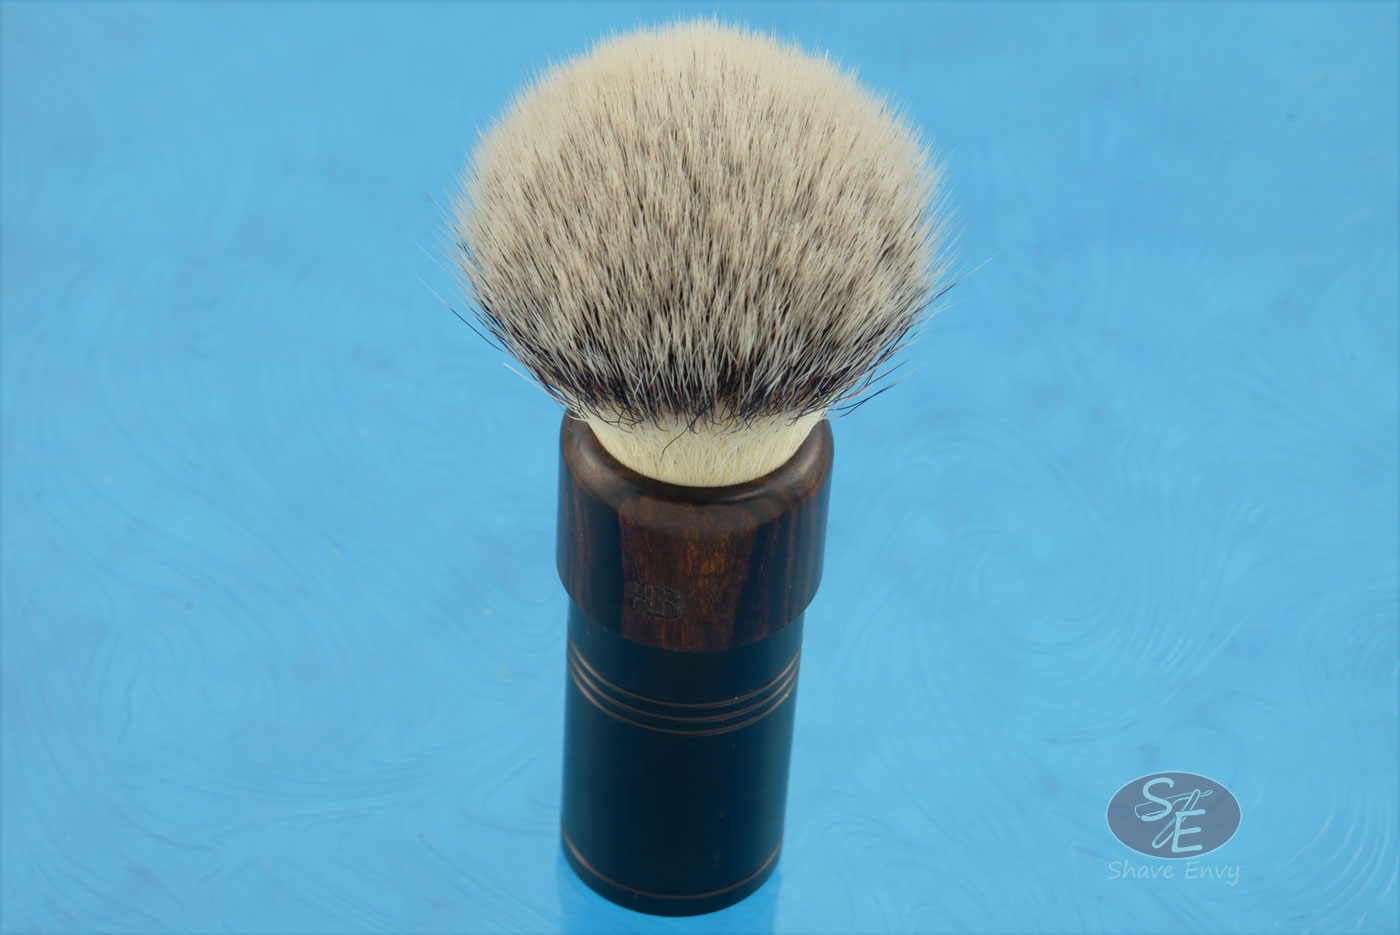 Shaving Brush with Ironwood and Black Aluminum, Synthetic Hybrid (24mm G-5 Knot)